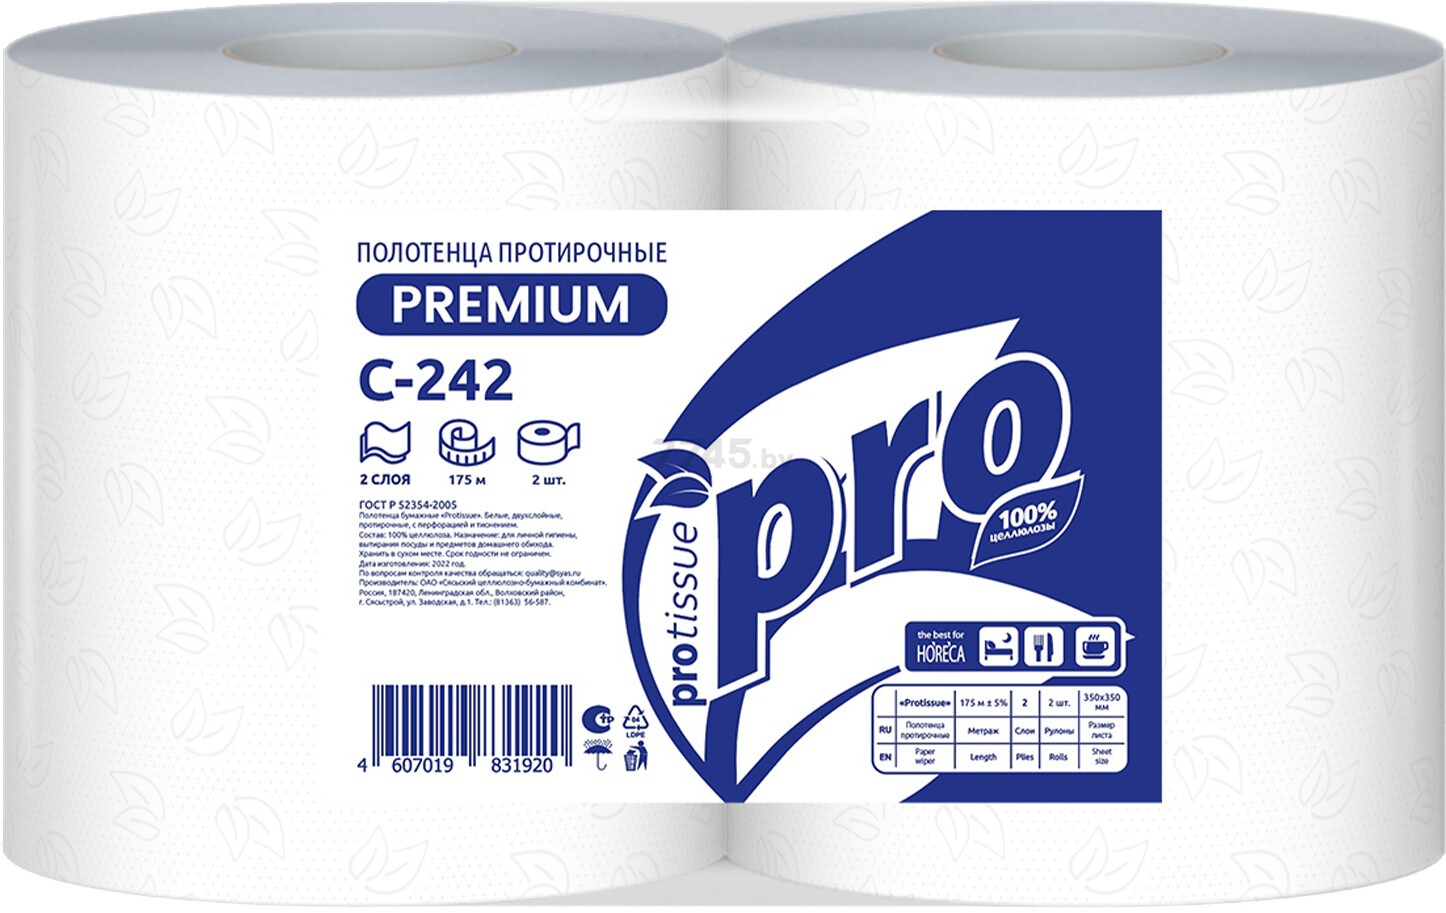 Полотенца бумажные PROTISSUE 2 слоя 1 рулон (С242)